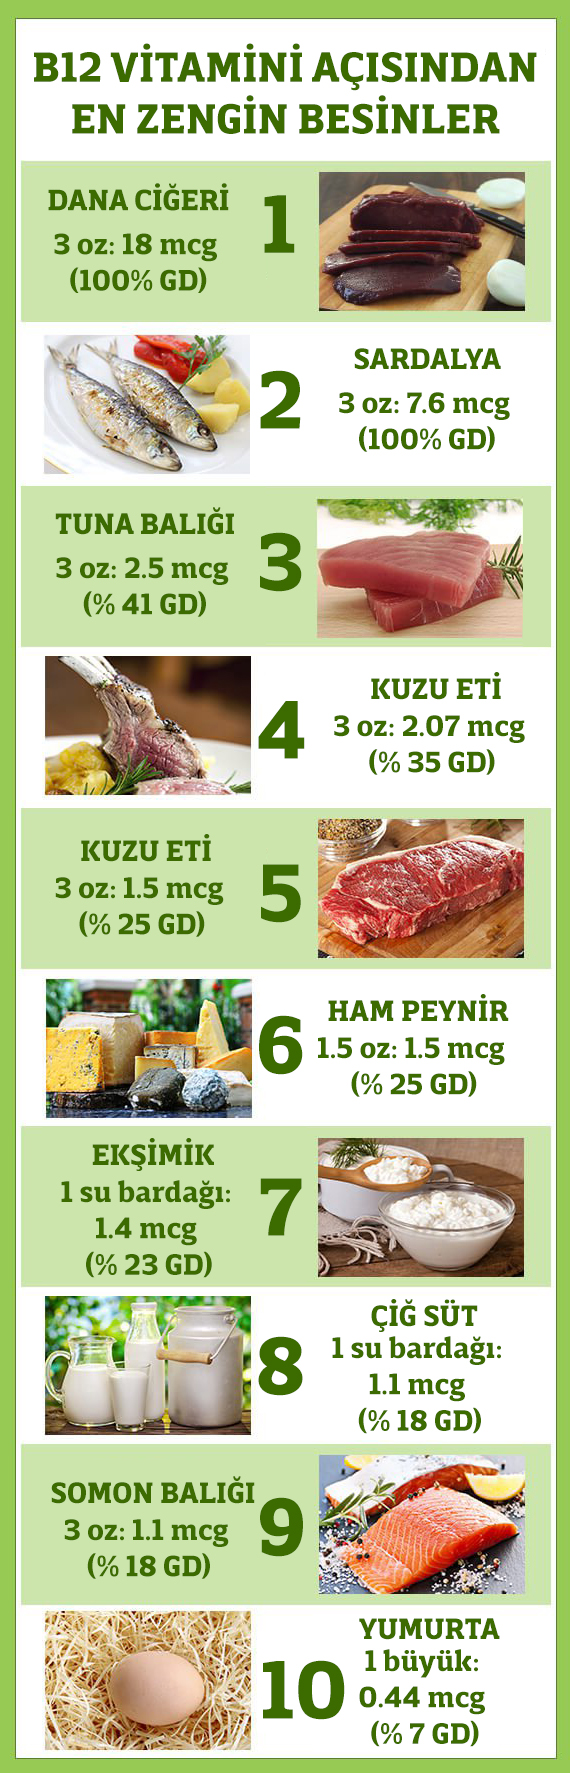 Vitamin-B12-infographic-Redo